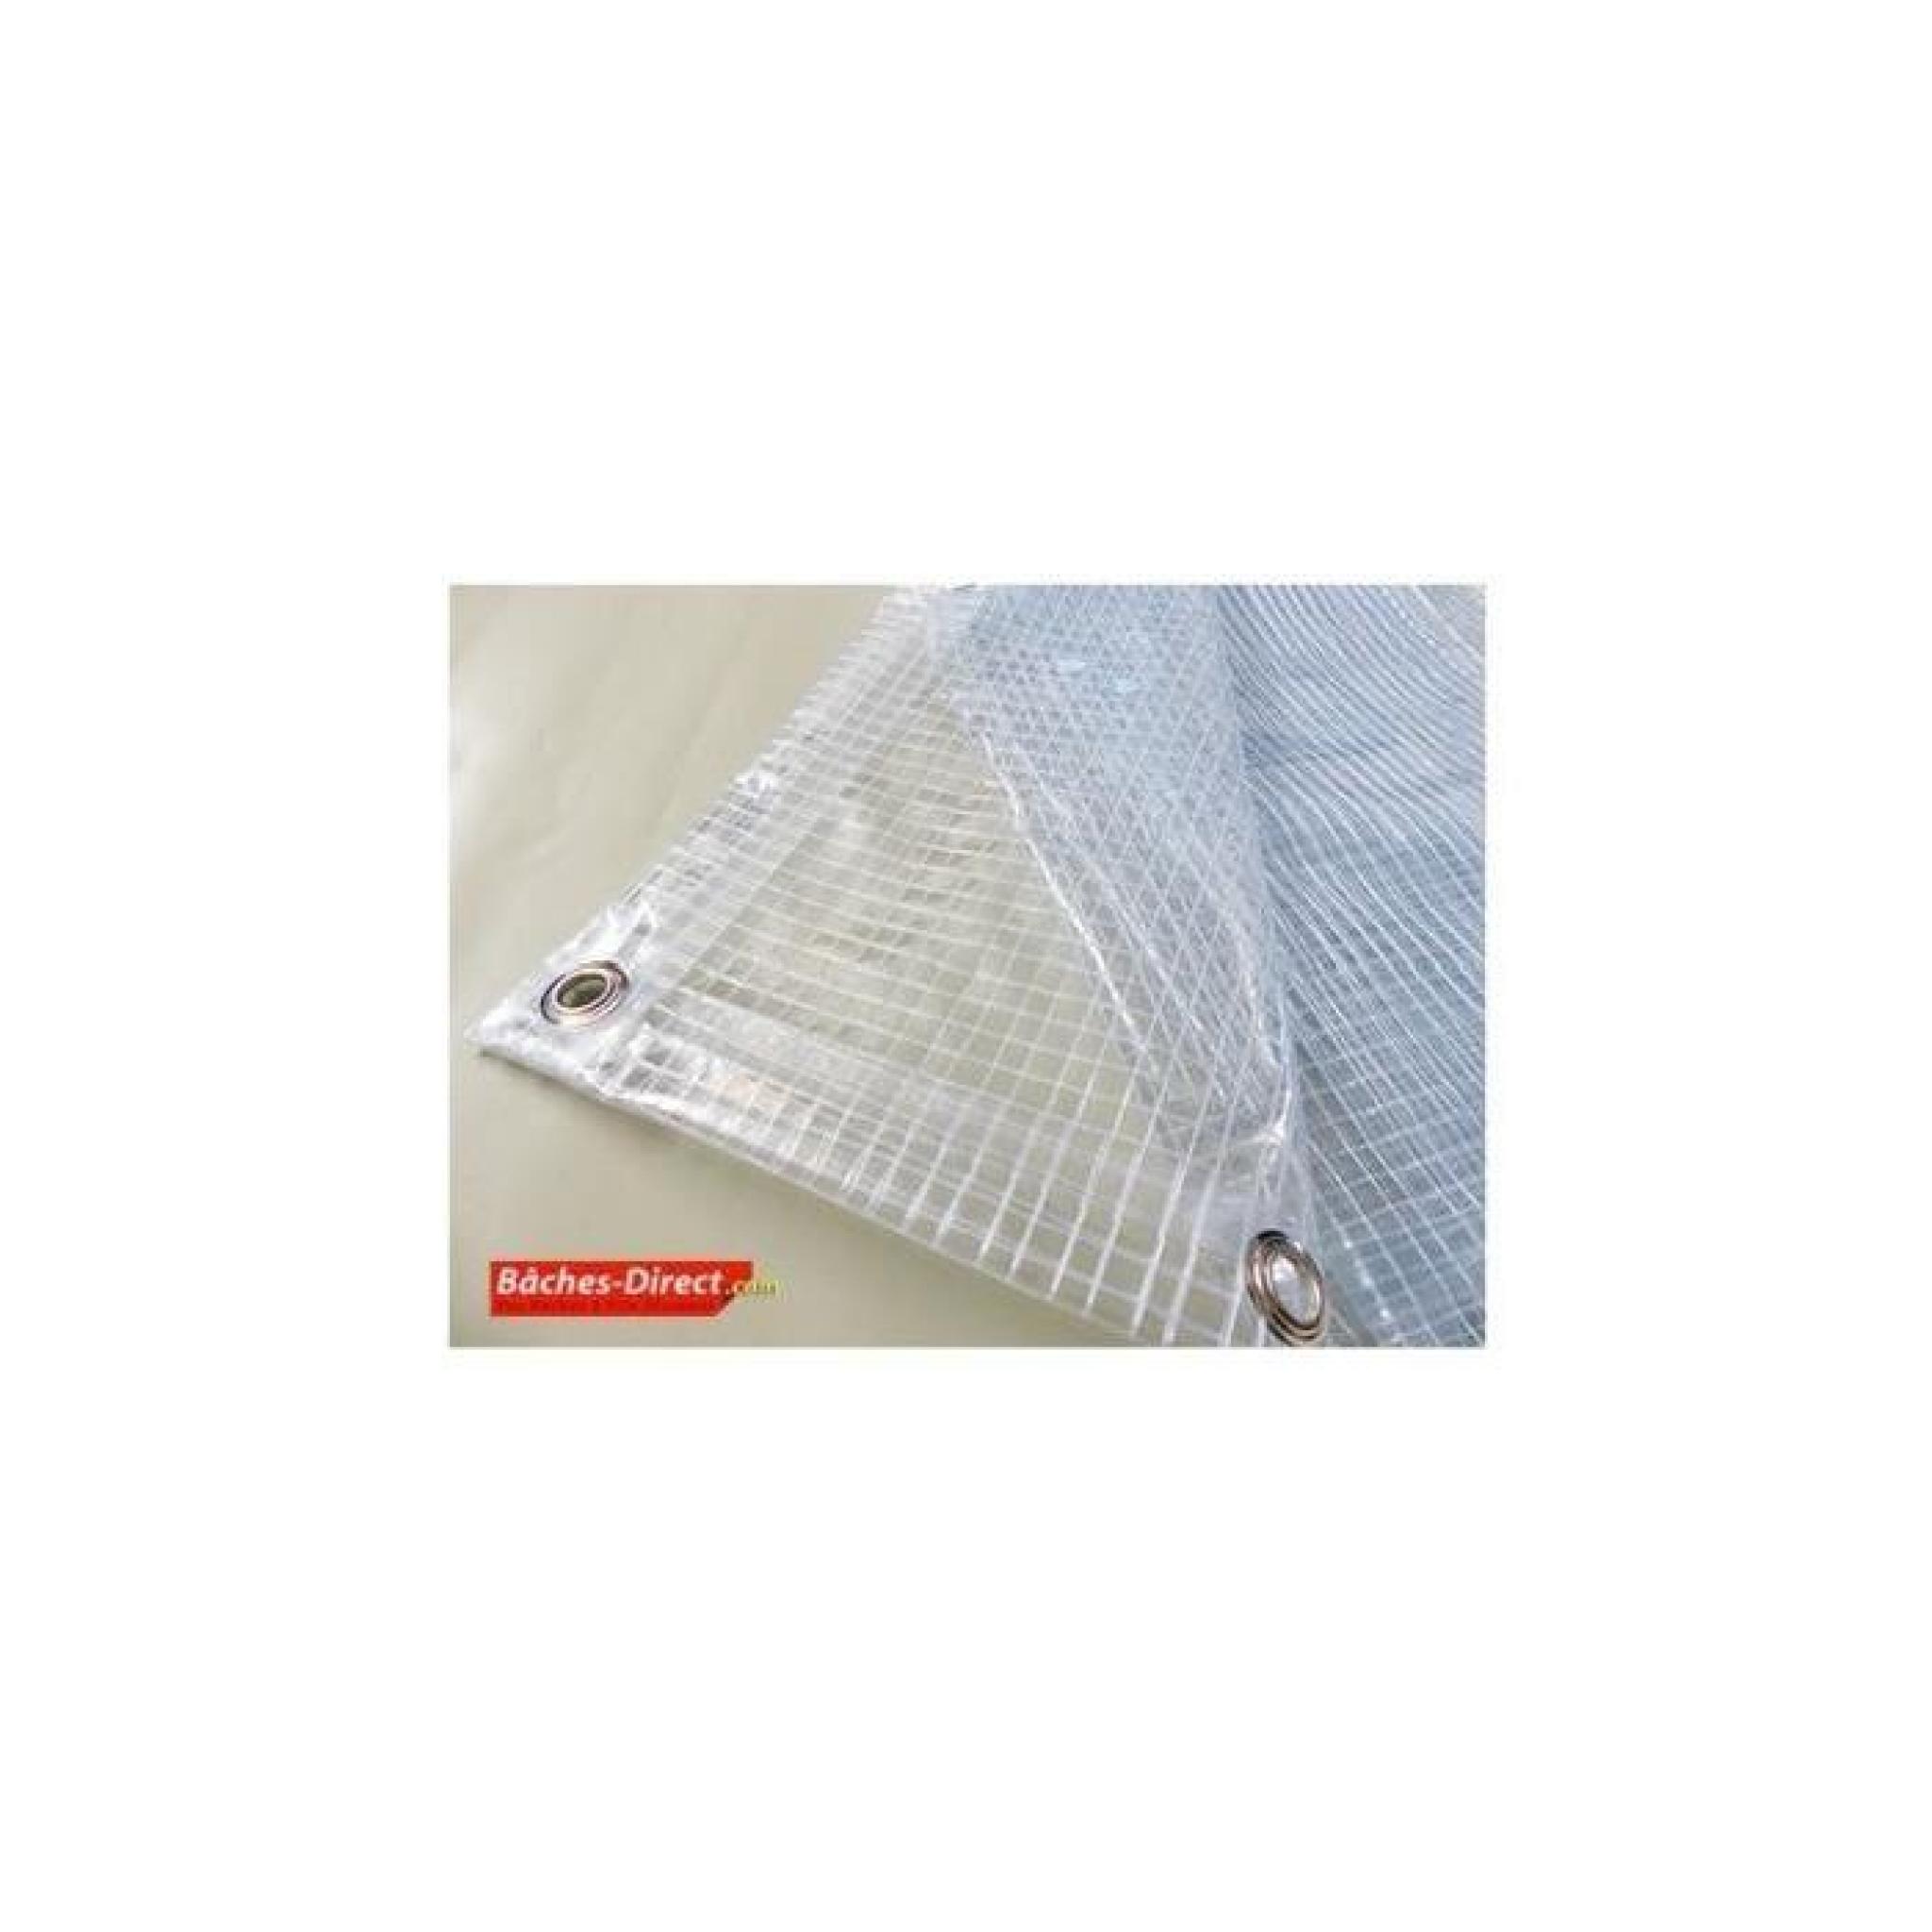 Bâche Pergola 400 g/m² - 2.1 x 4.5 m - bache transparente pour toile de pergola - bache imperméable Transparente Armée